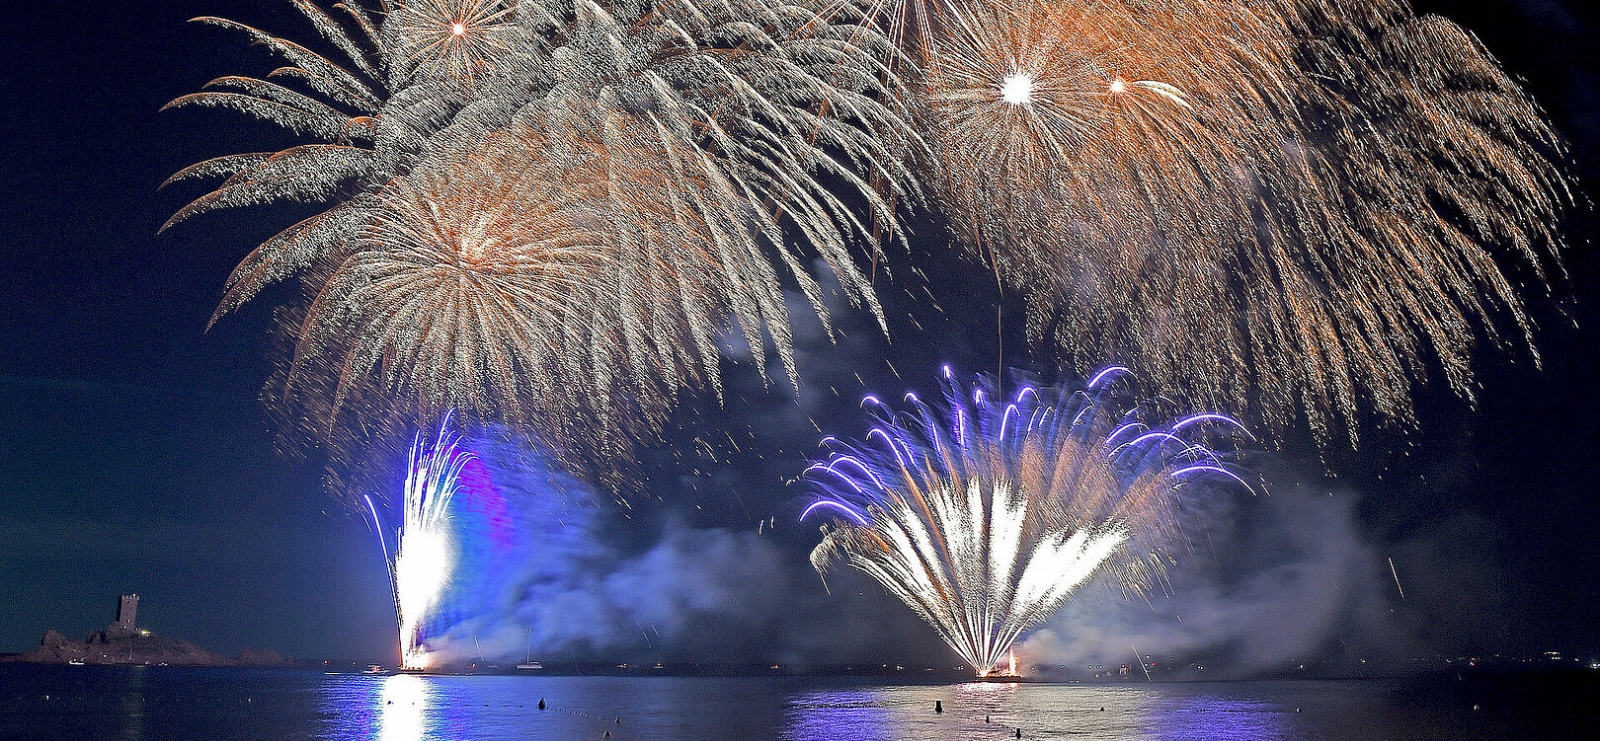 Fireworks on 15 July